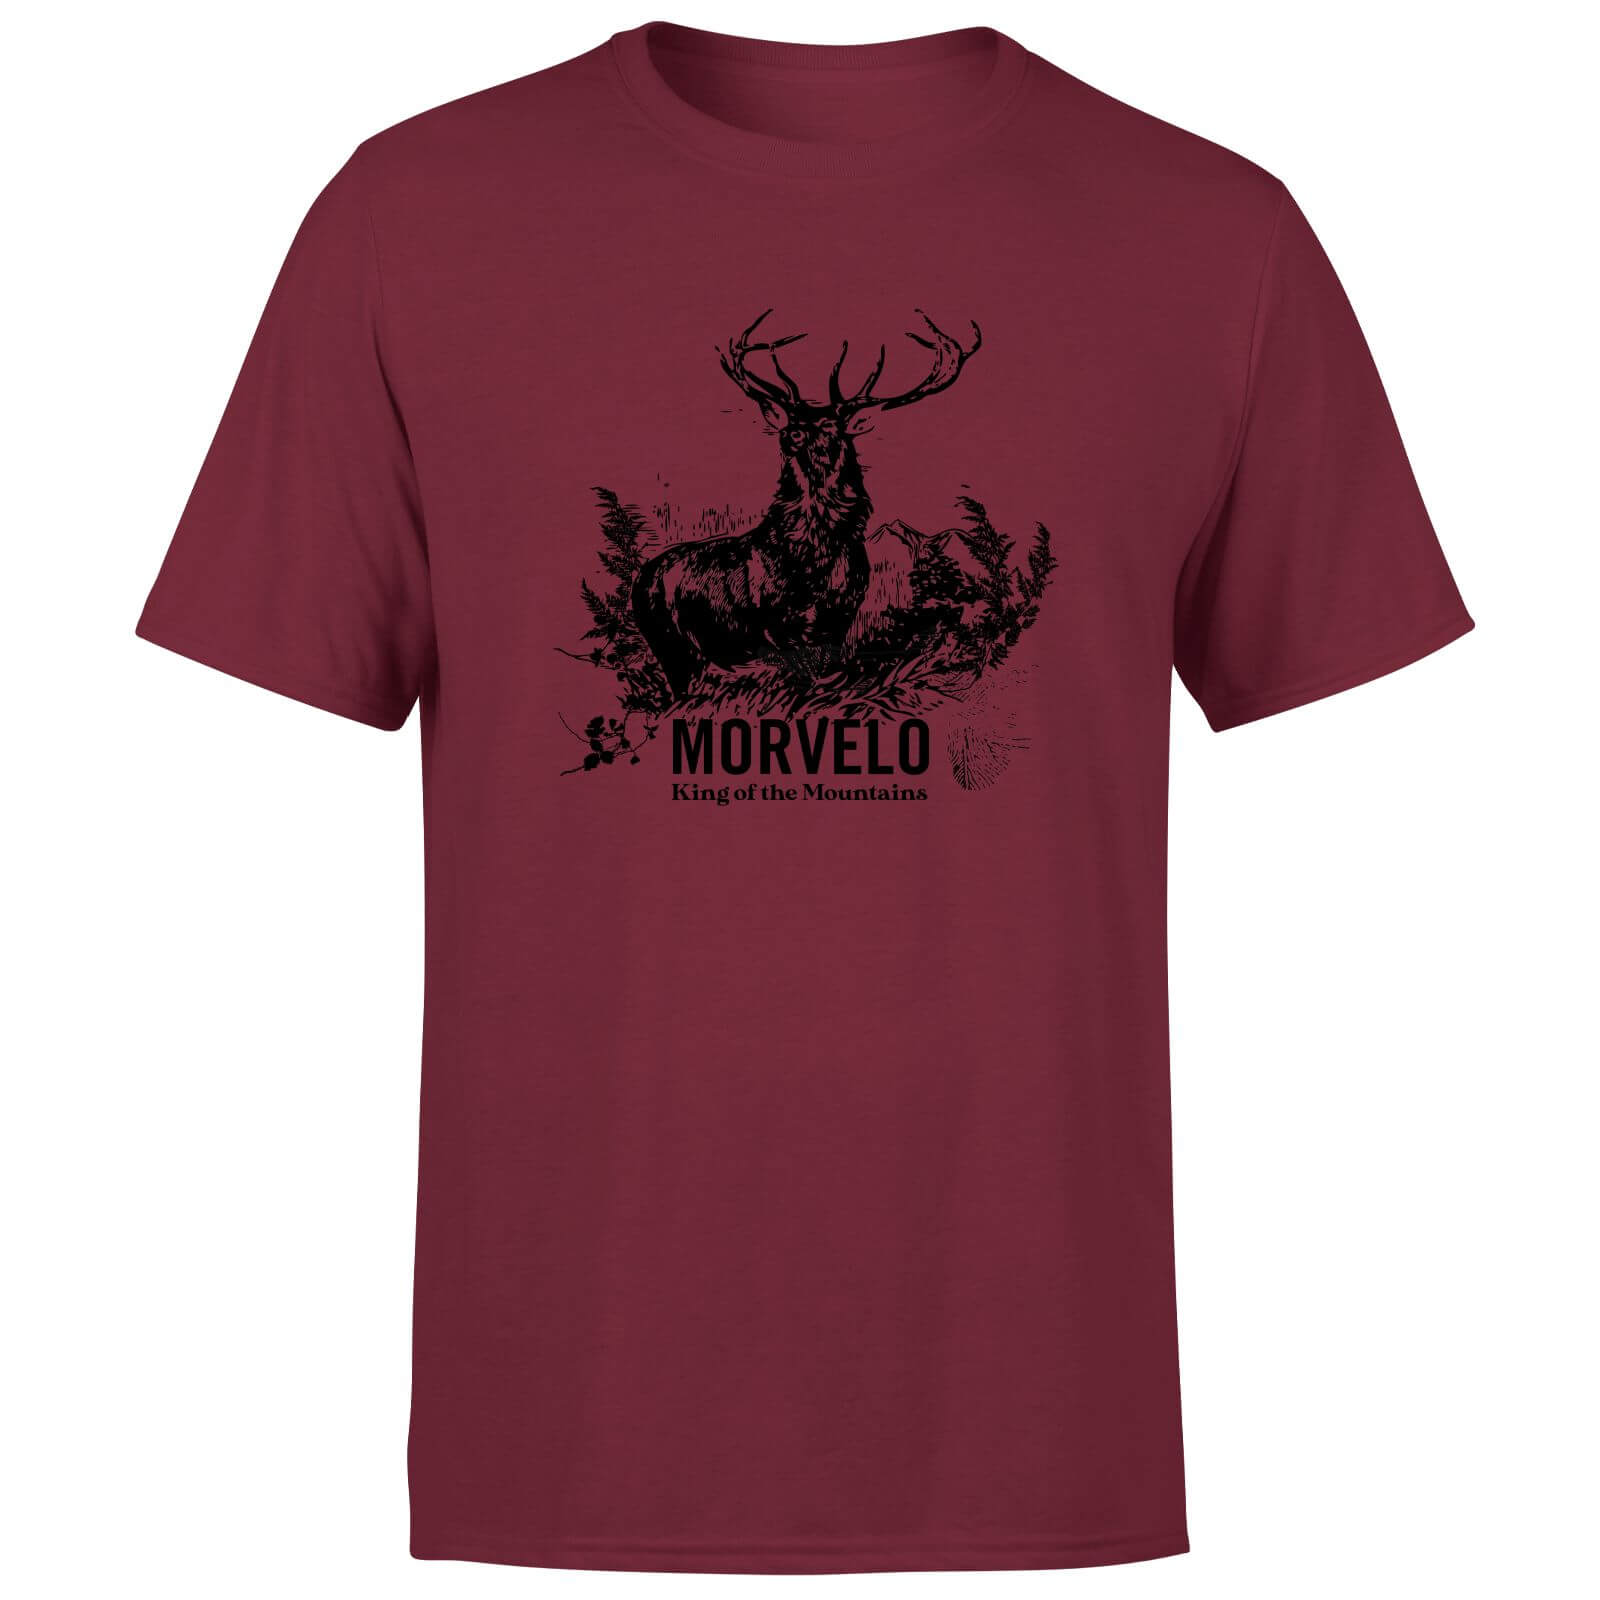 Morvelo King Men's T-Shirt - Burgundy - M - Burgundy